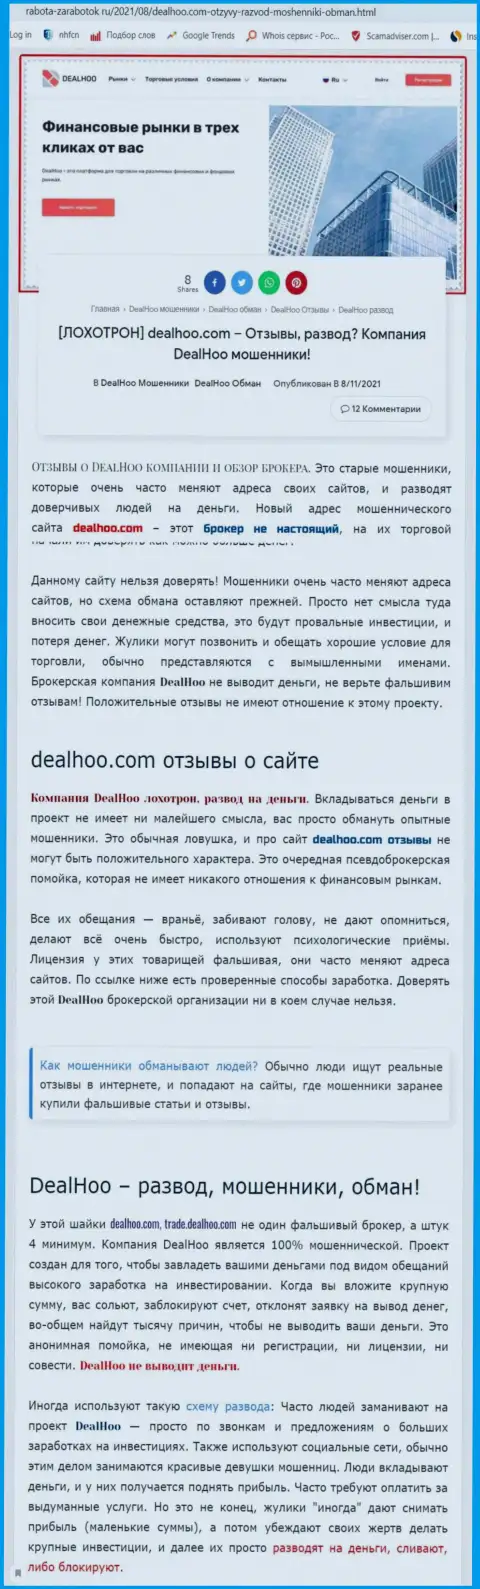 DealHoo это КИДАЛЫ !!! Обзор мошеннических комбинаций конторы и отзывы пострадавших